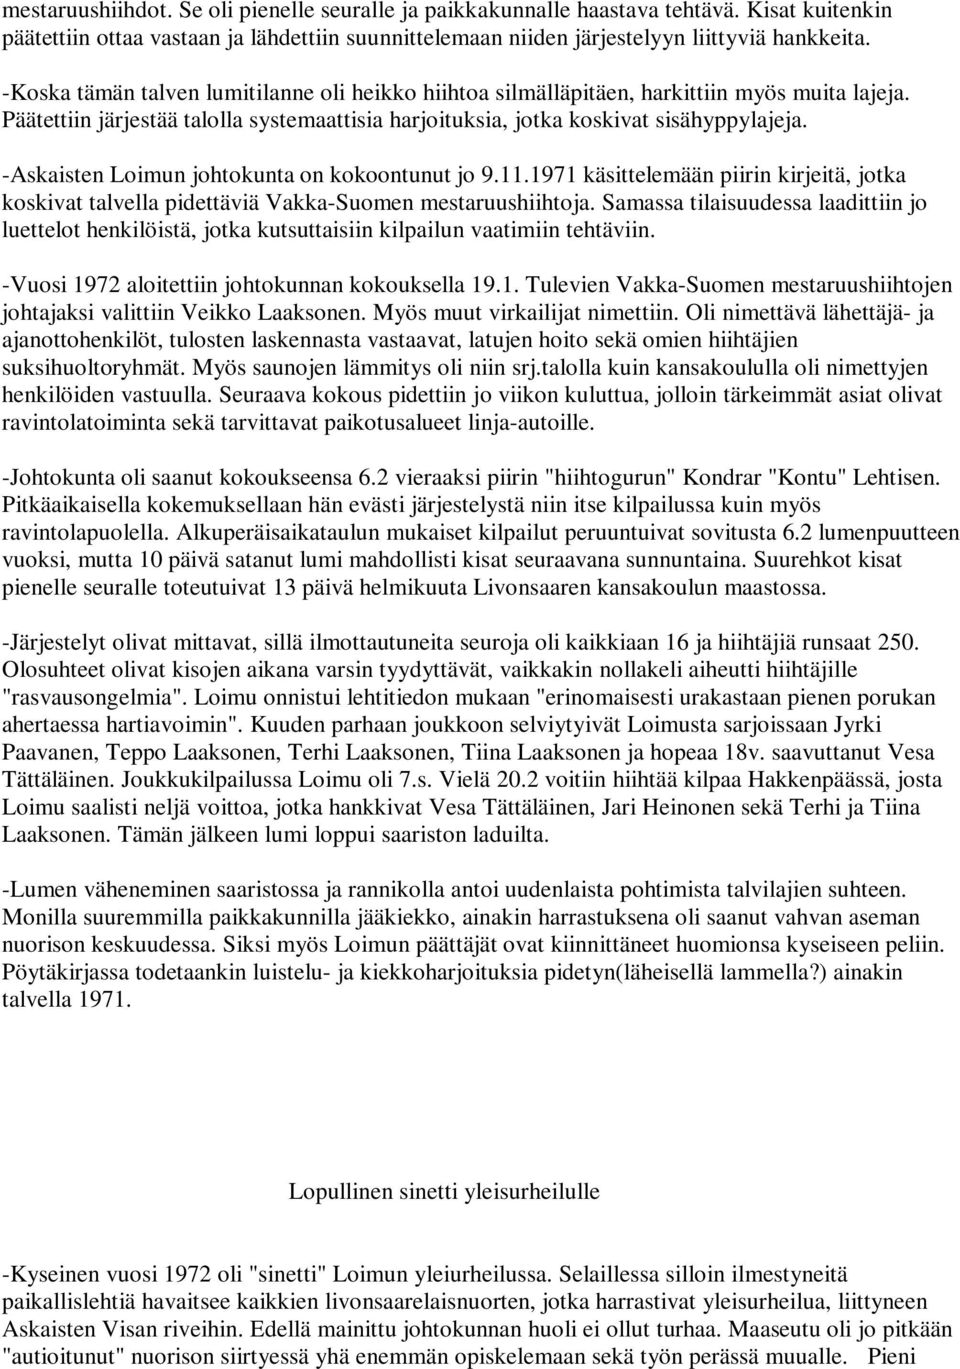 -Askaisten Loimun johtokunta on kokoontunut jo 9.11.1971 käsittelemään piirin kirjeitä, jotka koskivat talvella pidettäviä Vakka-Suomen mestaruushiihtoja.